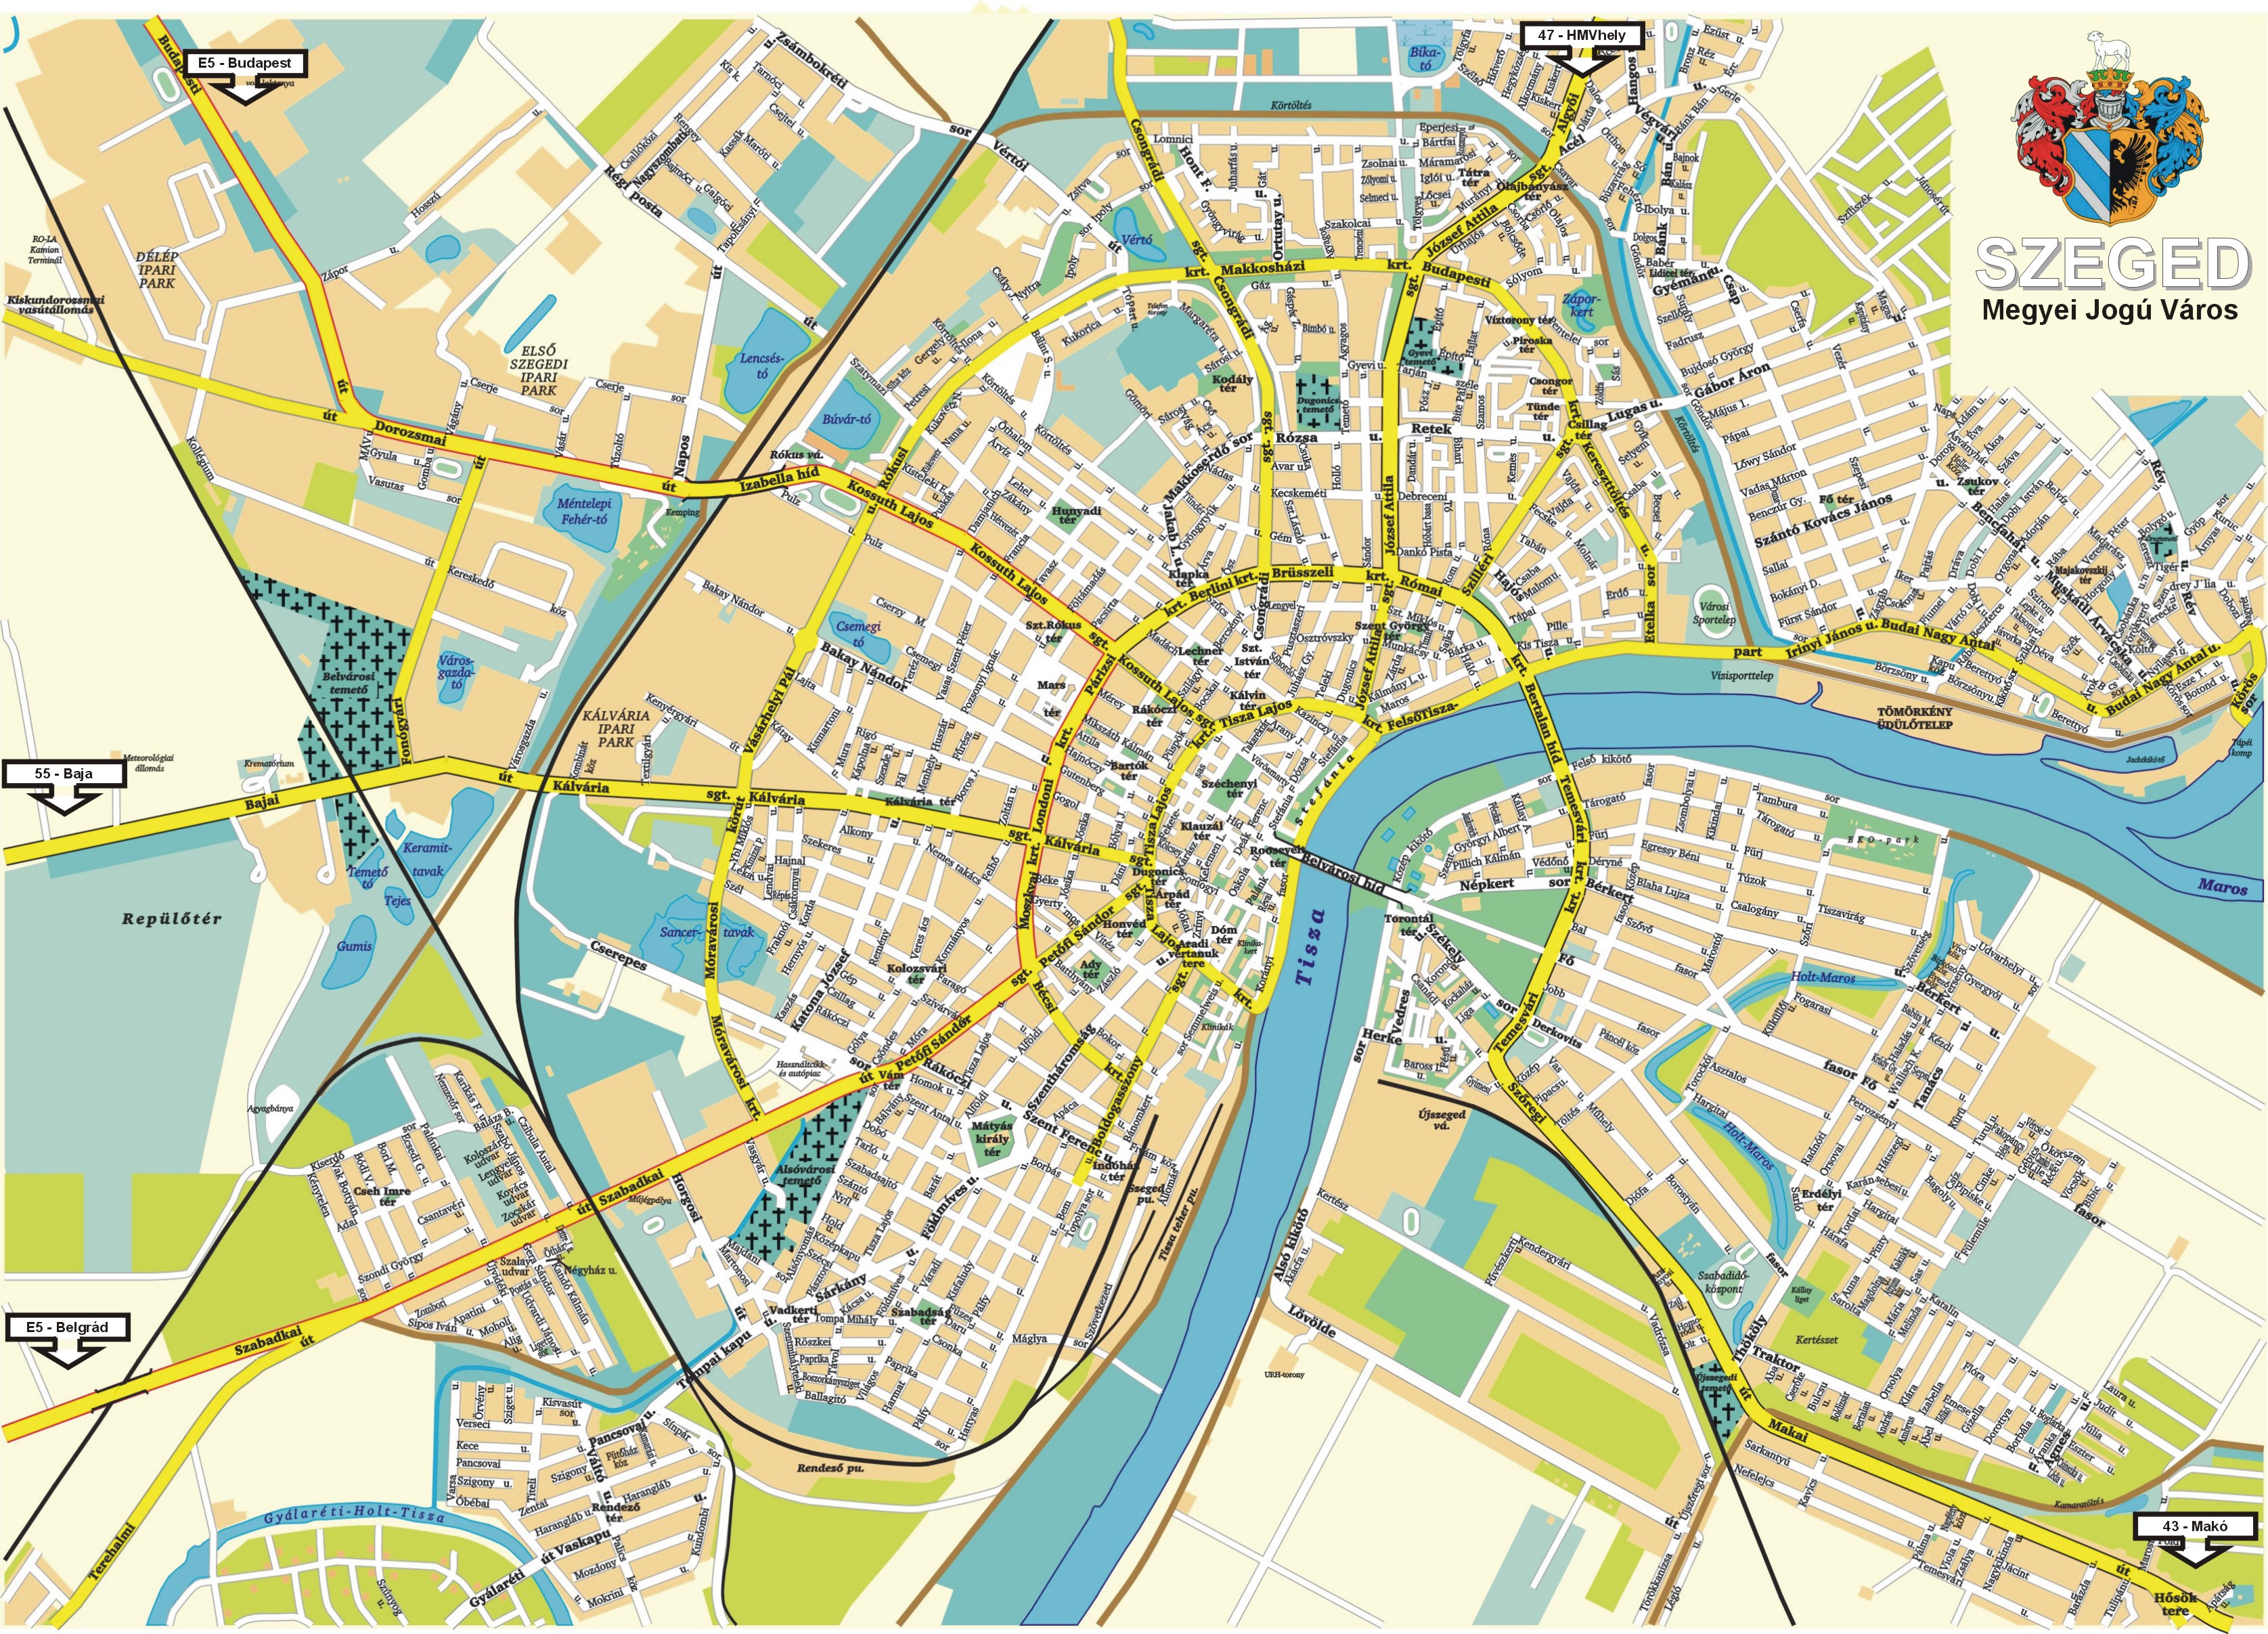 baja térkép nyomtatható Egyetemi Tavasz a Bolyai Intézetben baja térkép nyomtatható